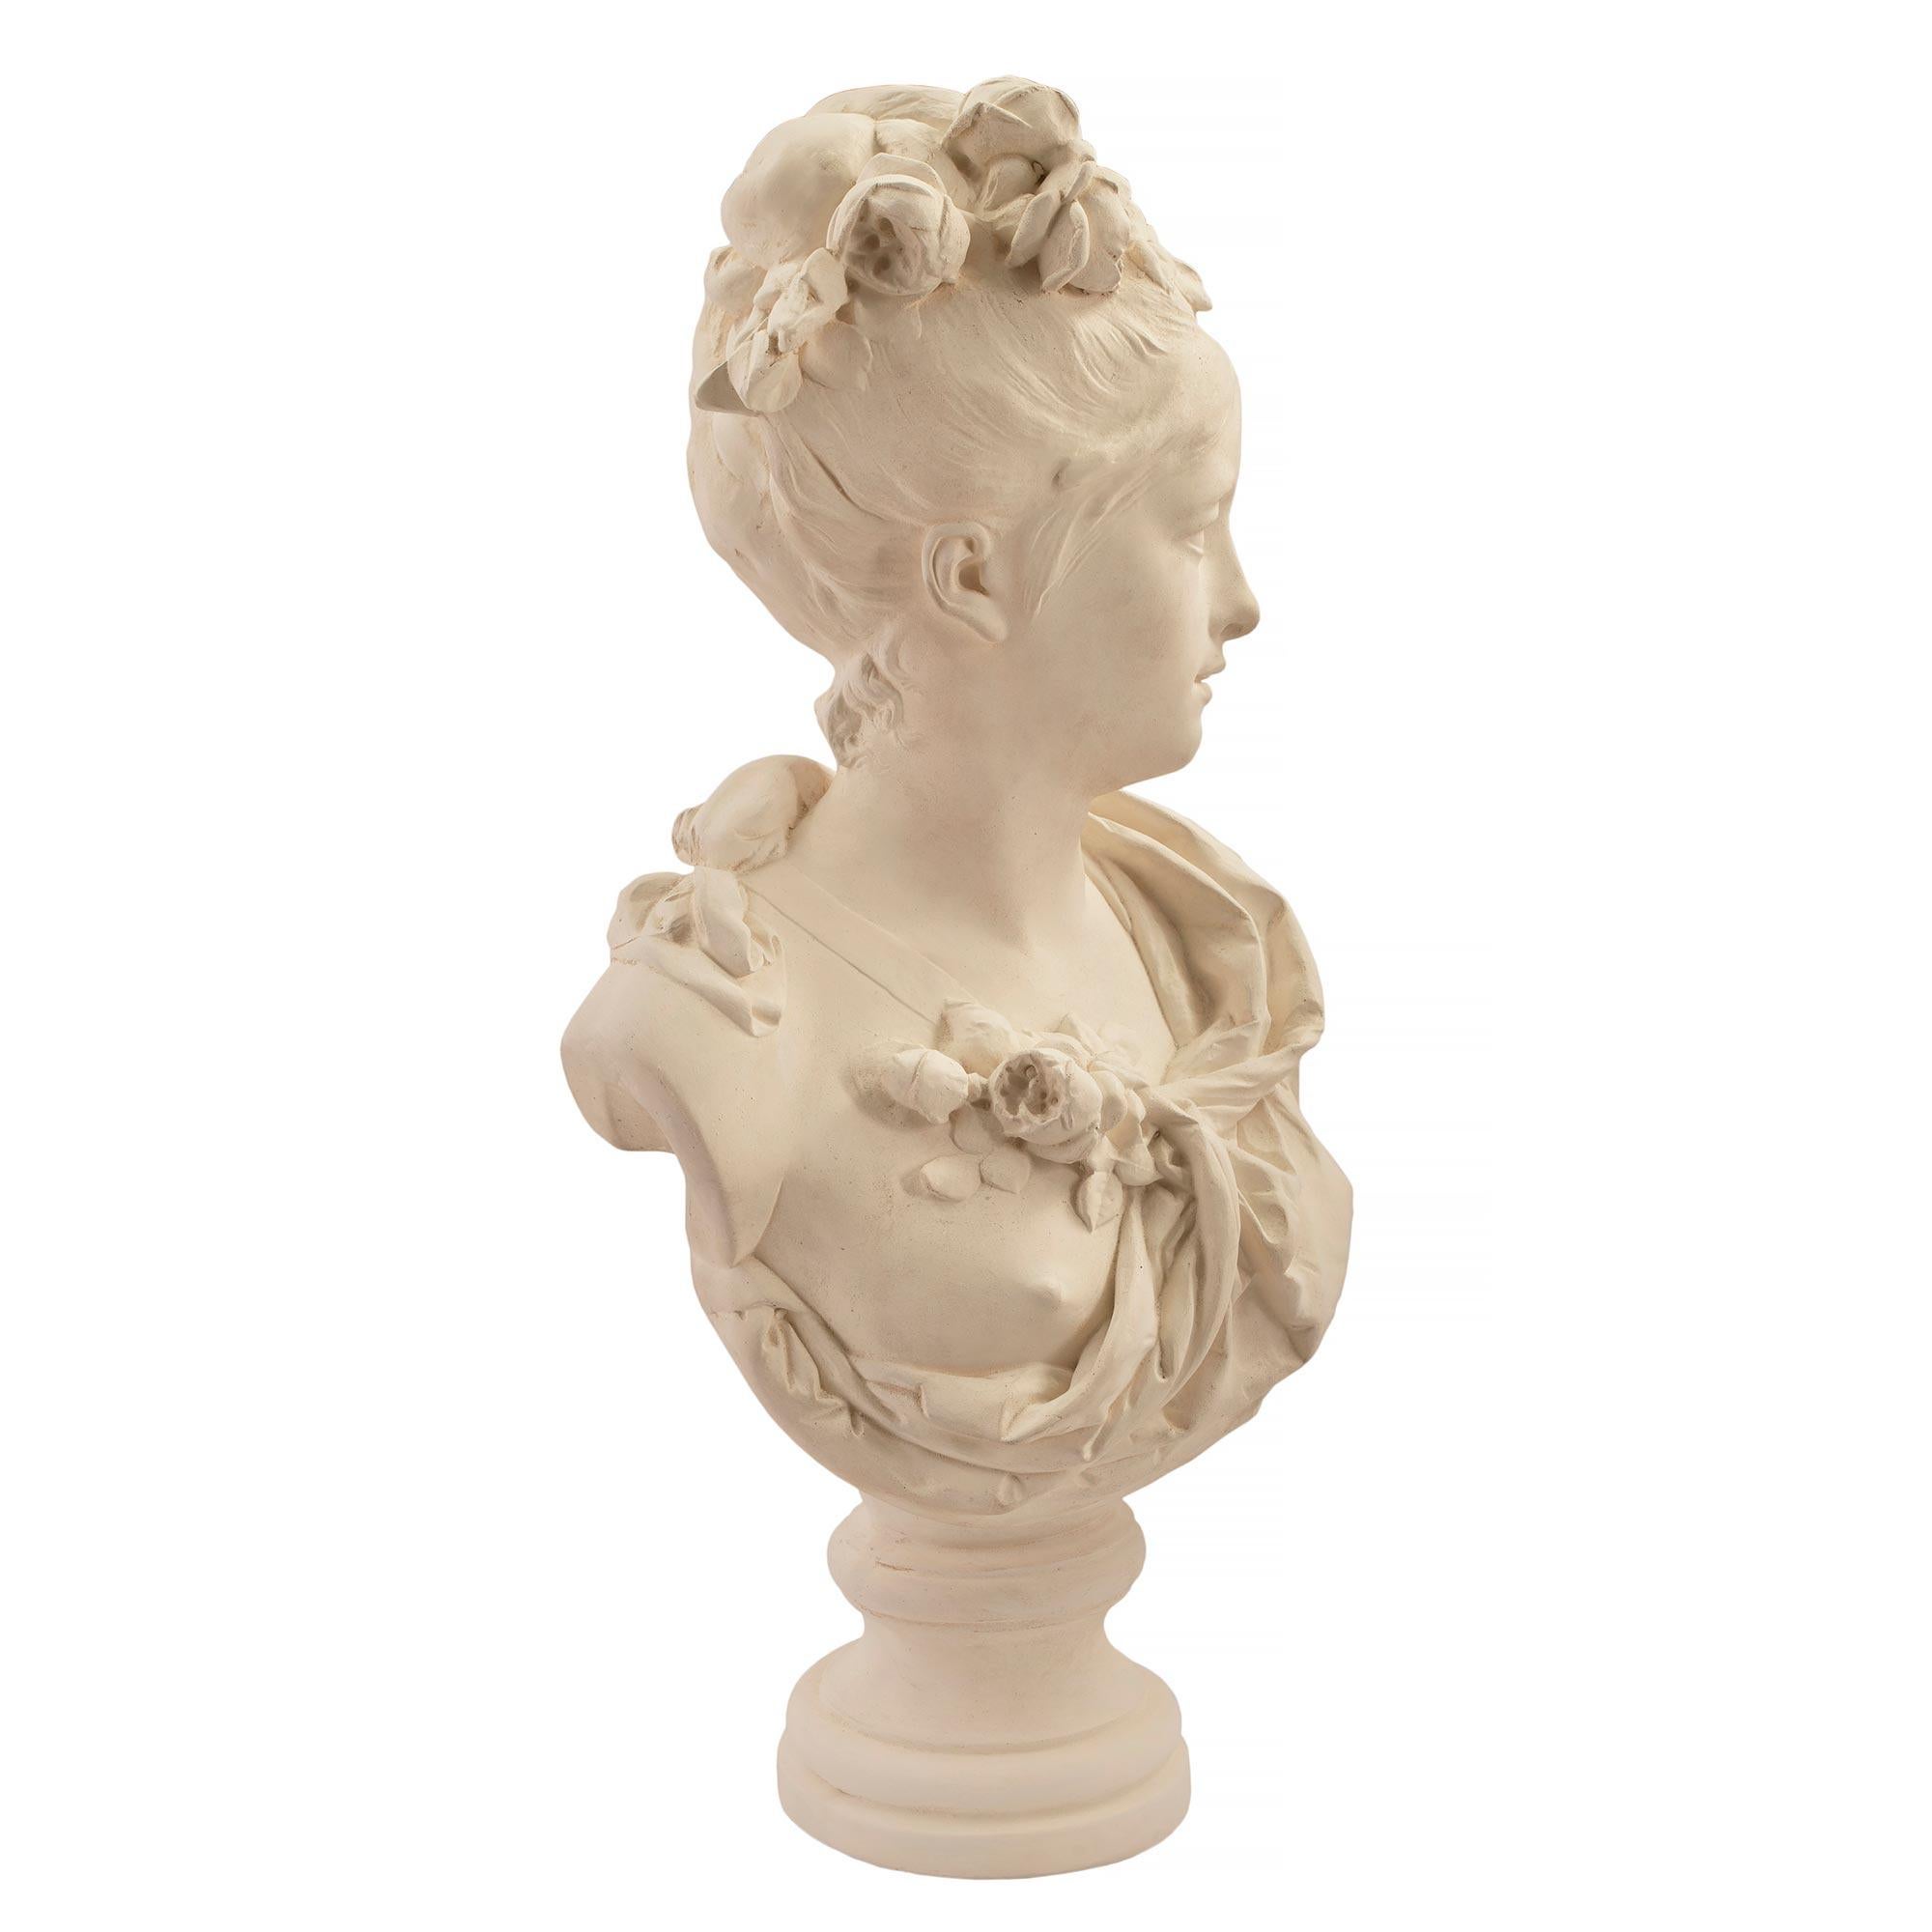 Élégant buste en plâtre d'une jeune femme, signé Albert-Ernest Carrier Belleuse, datant du milieu du XIXe siècle. Le buste d'une jeune femme en tenue classique rehaussée d'un petit bouquet de fleurs. Elle porte ses cheveux en chignon ornés d'une